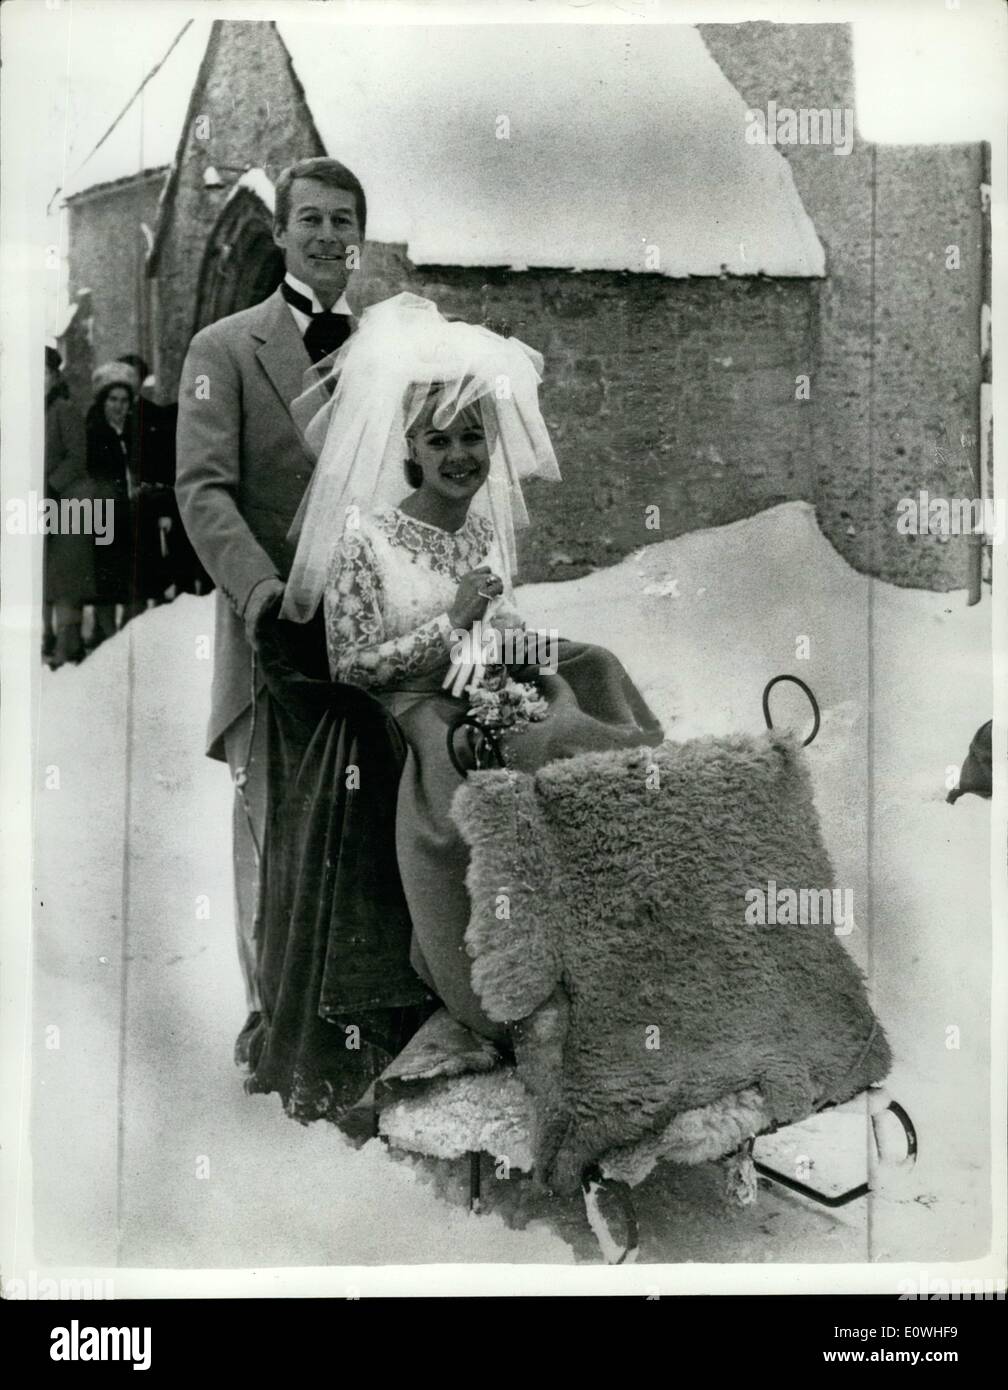 Gen 01, 1963 - giugno - la frizzante Sleigh-Bride matrimonio nella neve: Film di star giugno Ritchie aveva una favola wedding ieri. Ella ha lasciato la chiesa su di una slitta spinta oltre la neve scintillante dal suo sposo 28 anno vecchio mercante banchiere sig. Marcus girare bull... Giugno, la pellicola ''una sorta di amare l'', era sposata nel villaggio di Broughton Poggs, Gloucestershire.. Un Rolls-Epyce aveva trainato per la sua Chiesa in slitta. Giugno era una delusione per il suo giorno di nozze - la sua madre non poteva girare fino in tempo per la cerimonia - ella era stranded a Cheltenham - 30 miglia di distanza. Foto Stock